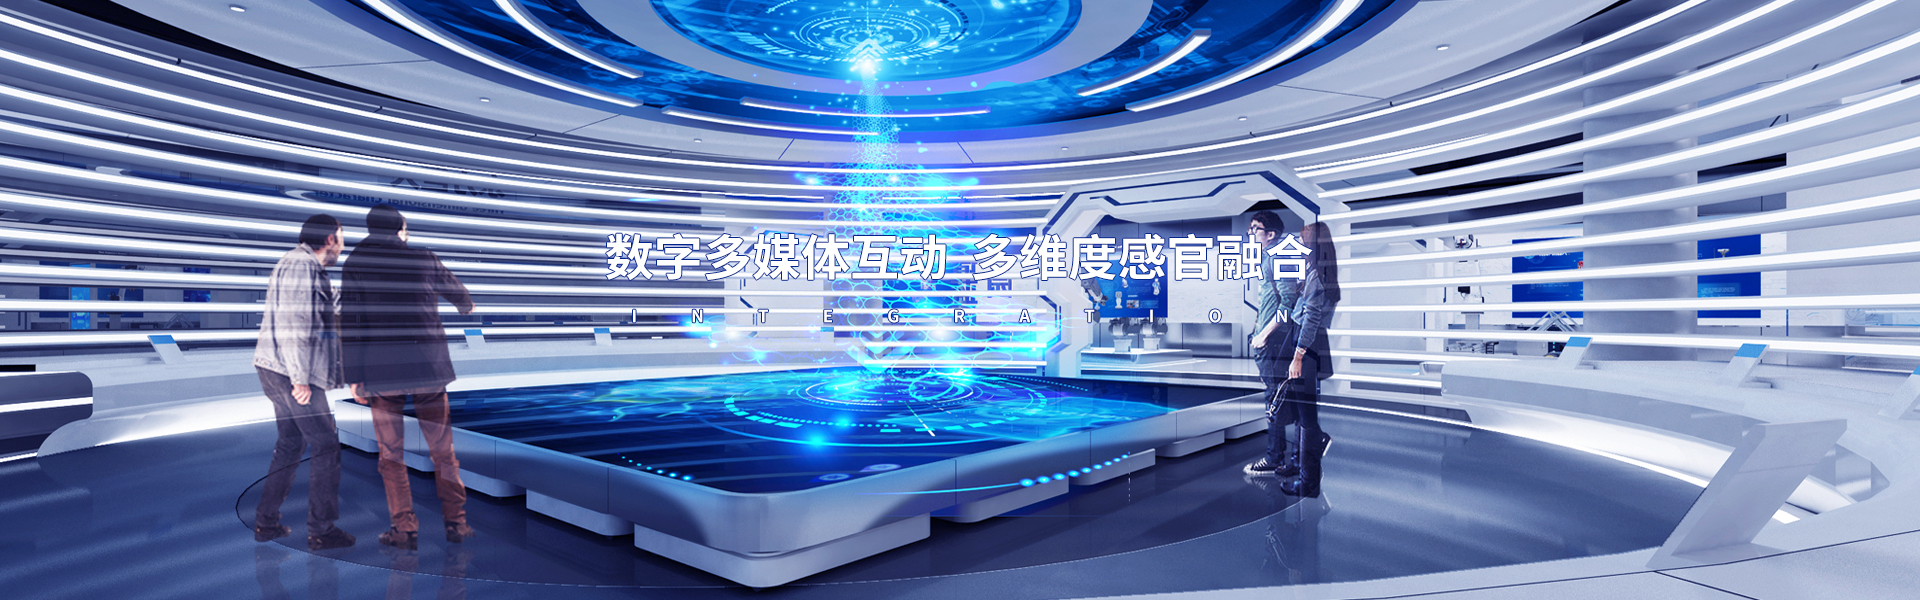 虚拟单车_虚拟场景互动_广州聚辉电子有限公司